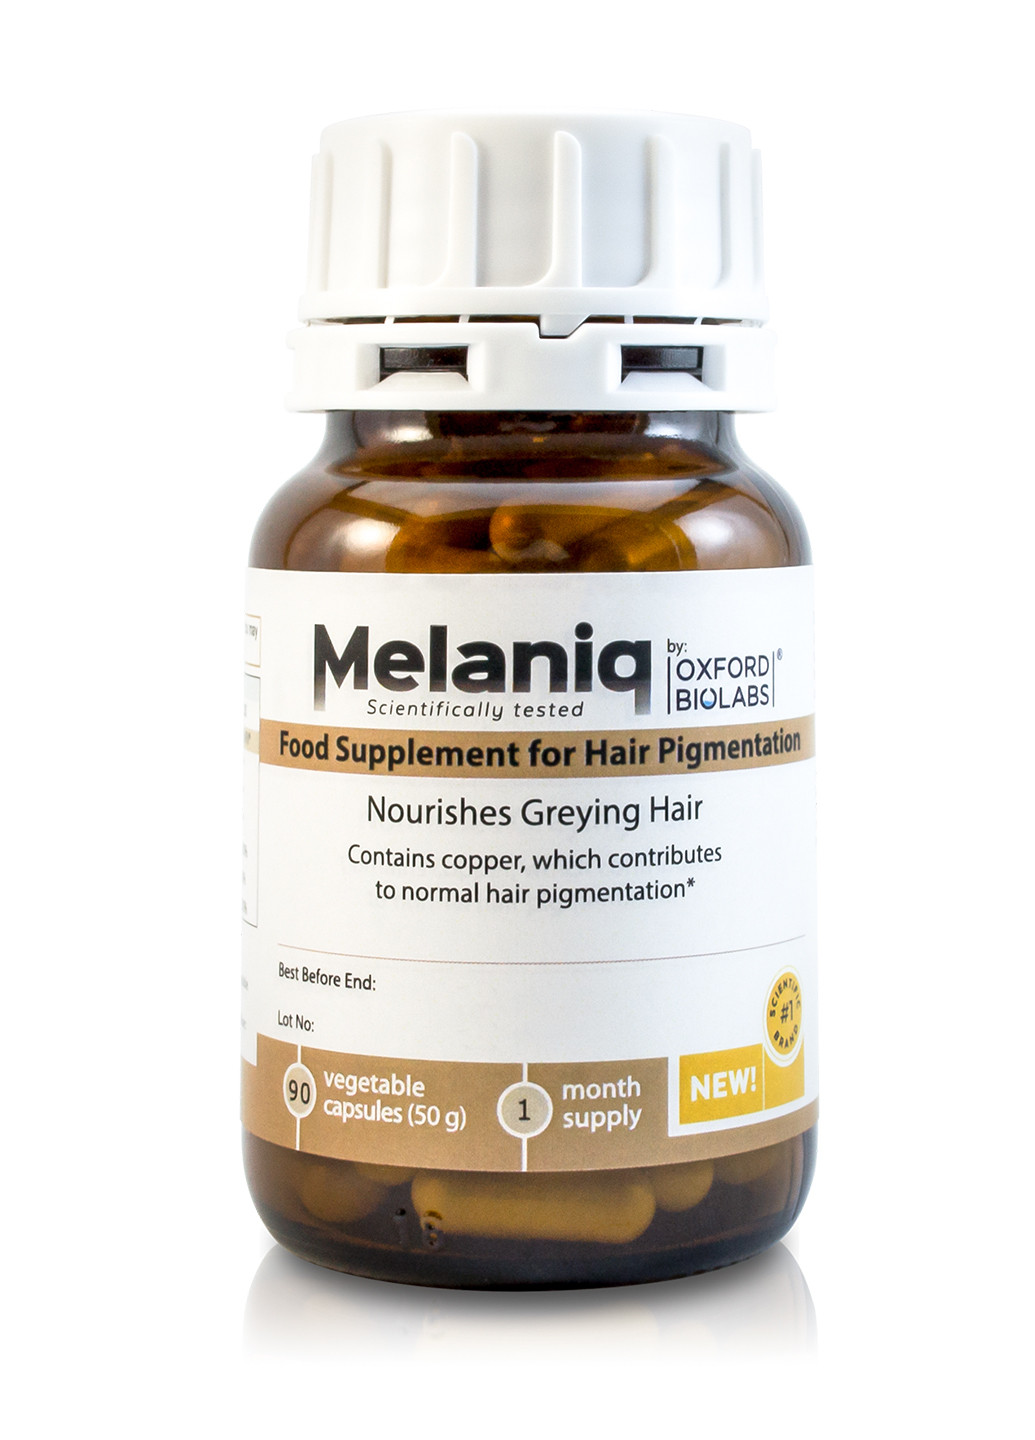 Mолекулярная добавка для поддержания цвета волос и профилактики ранней седины Melaniq® Oxford Biolabs